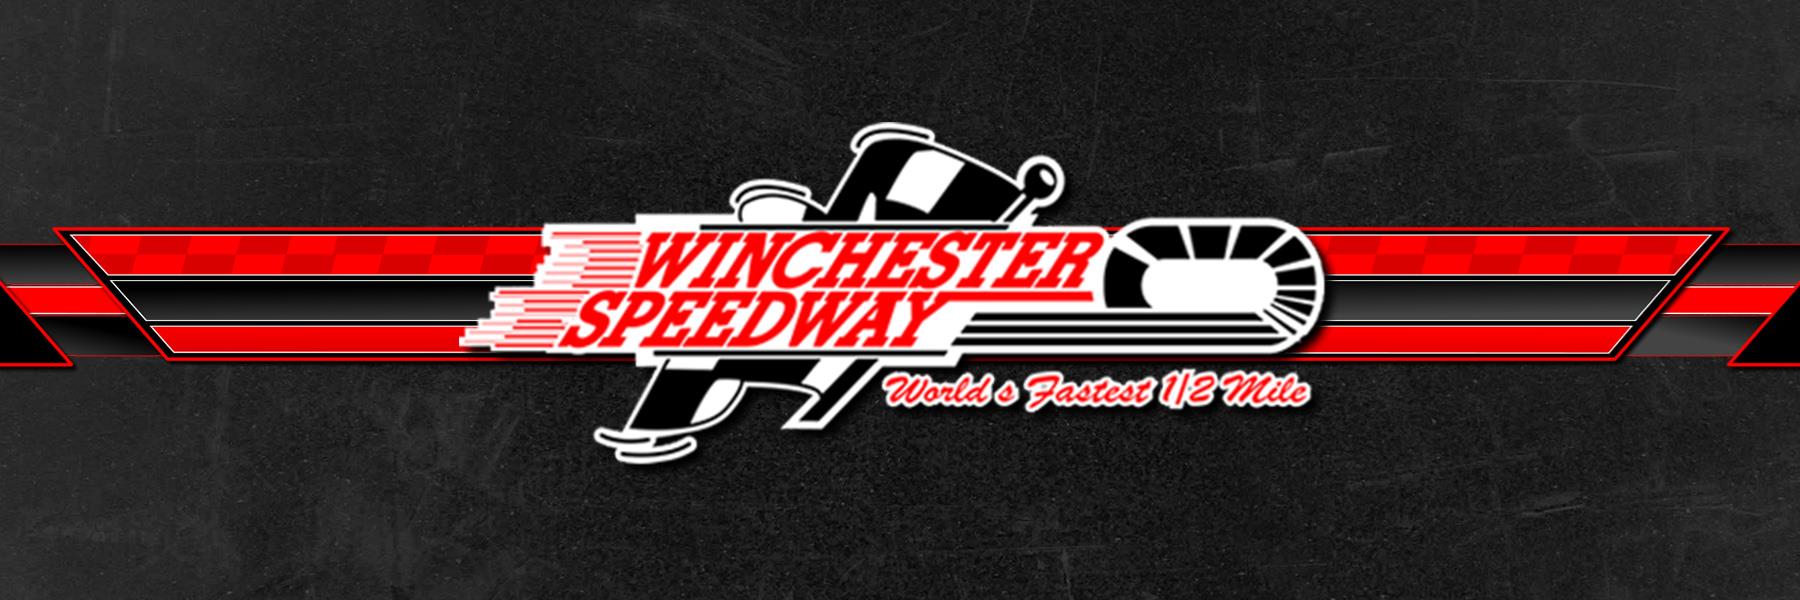 4/27/2008 - Winchester Speedway